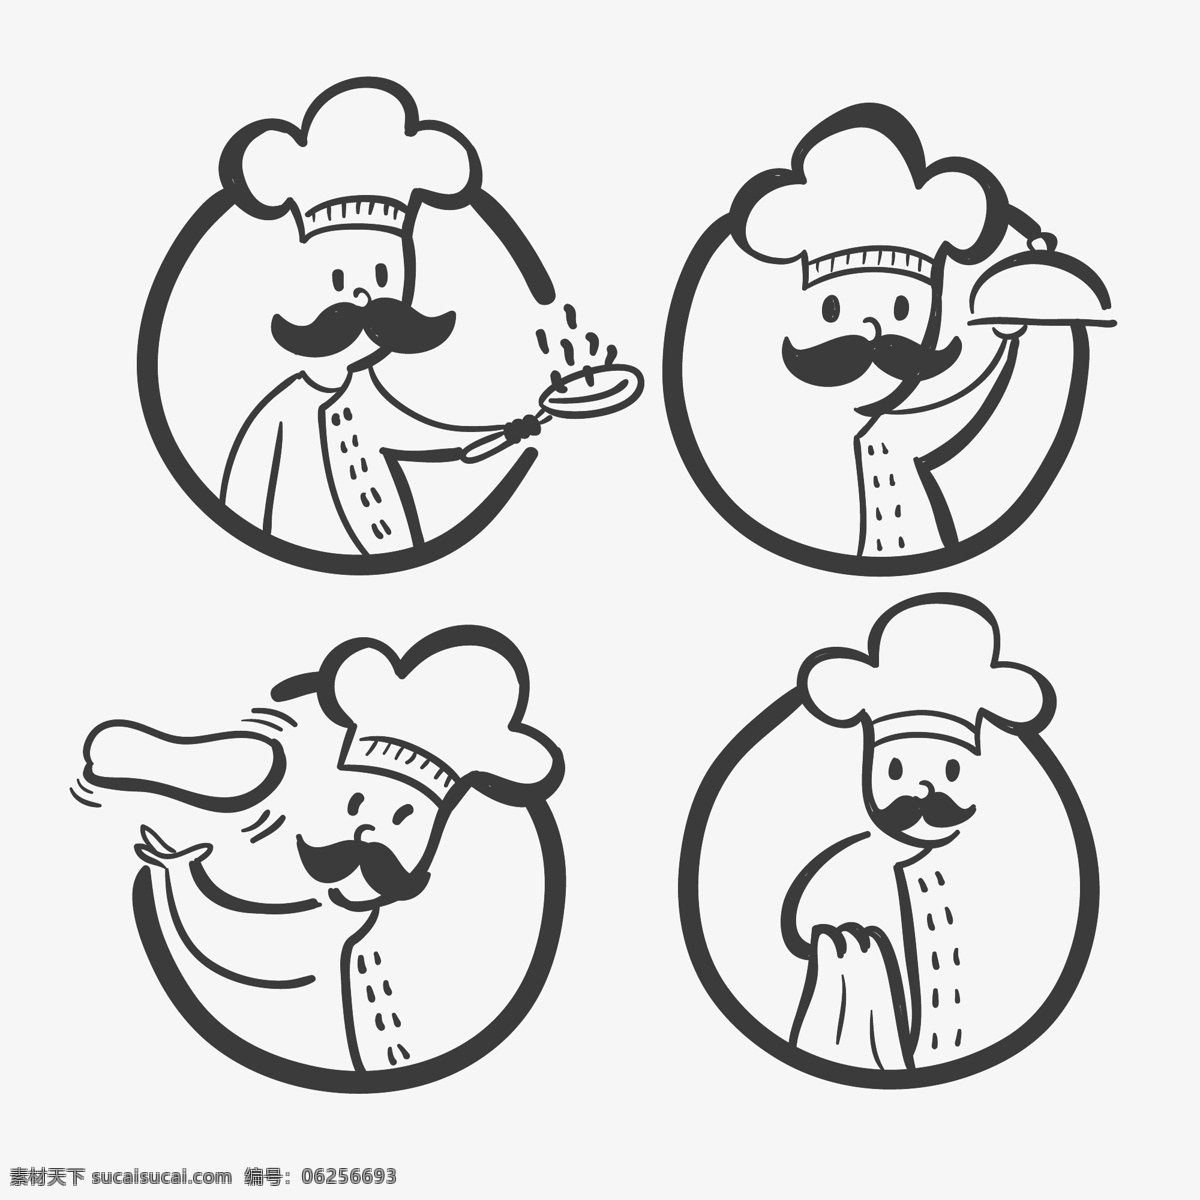 卡通美食大厨 厨师 厨师人像 厨师公仔 卡通厨师 高级厨师 大厨 漫画厨师 厨师插图 烹饪 美食 厨师标志 厨师logo 白色